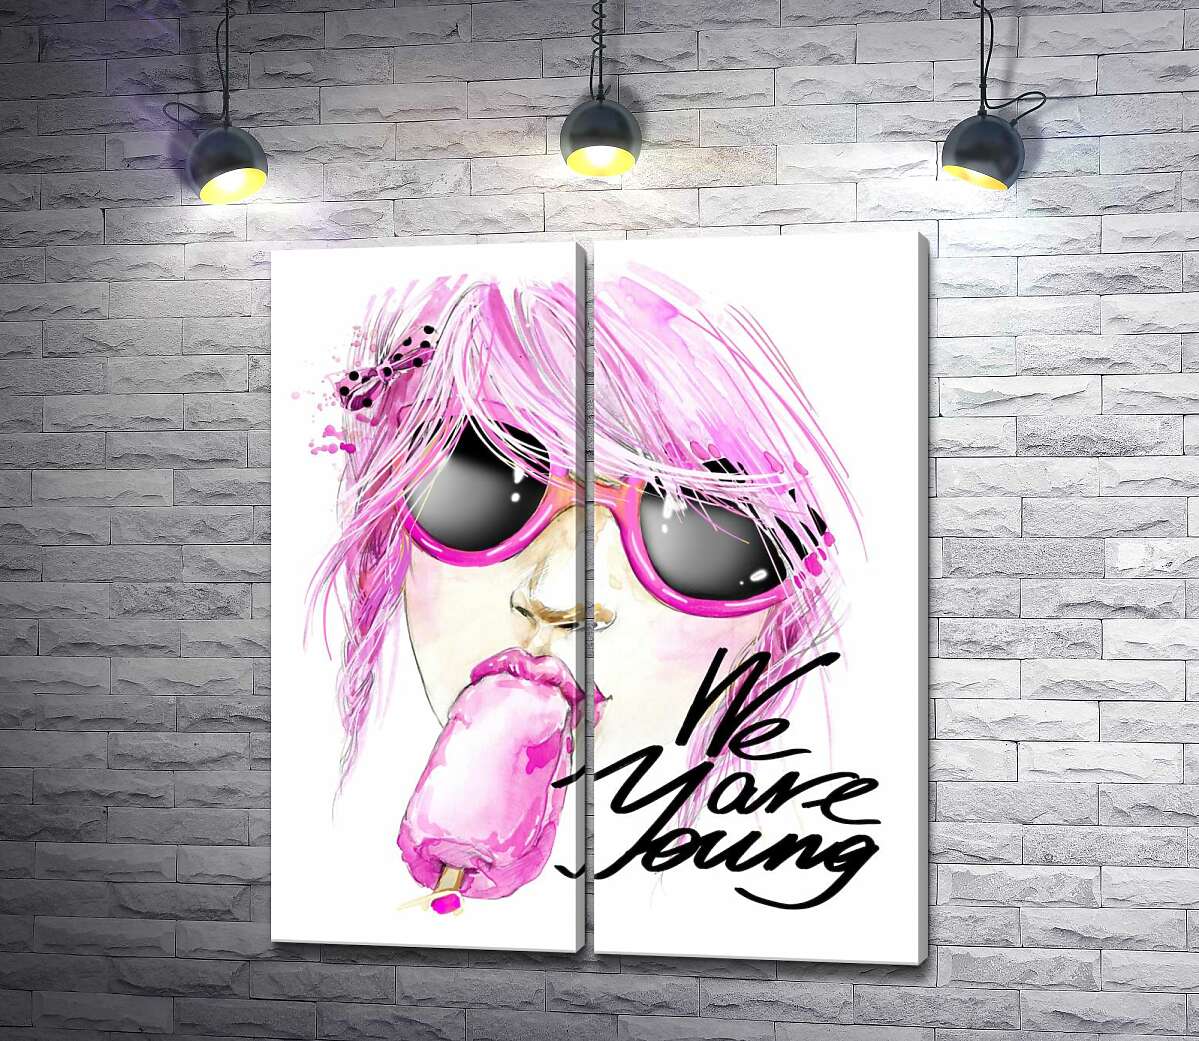 модульная картина Девушка с розовыми волосами смакует мороженое рядом с надписью "we are young"